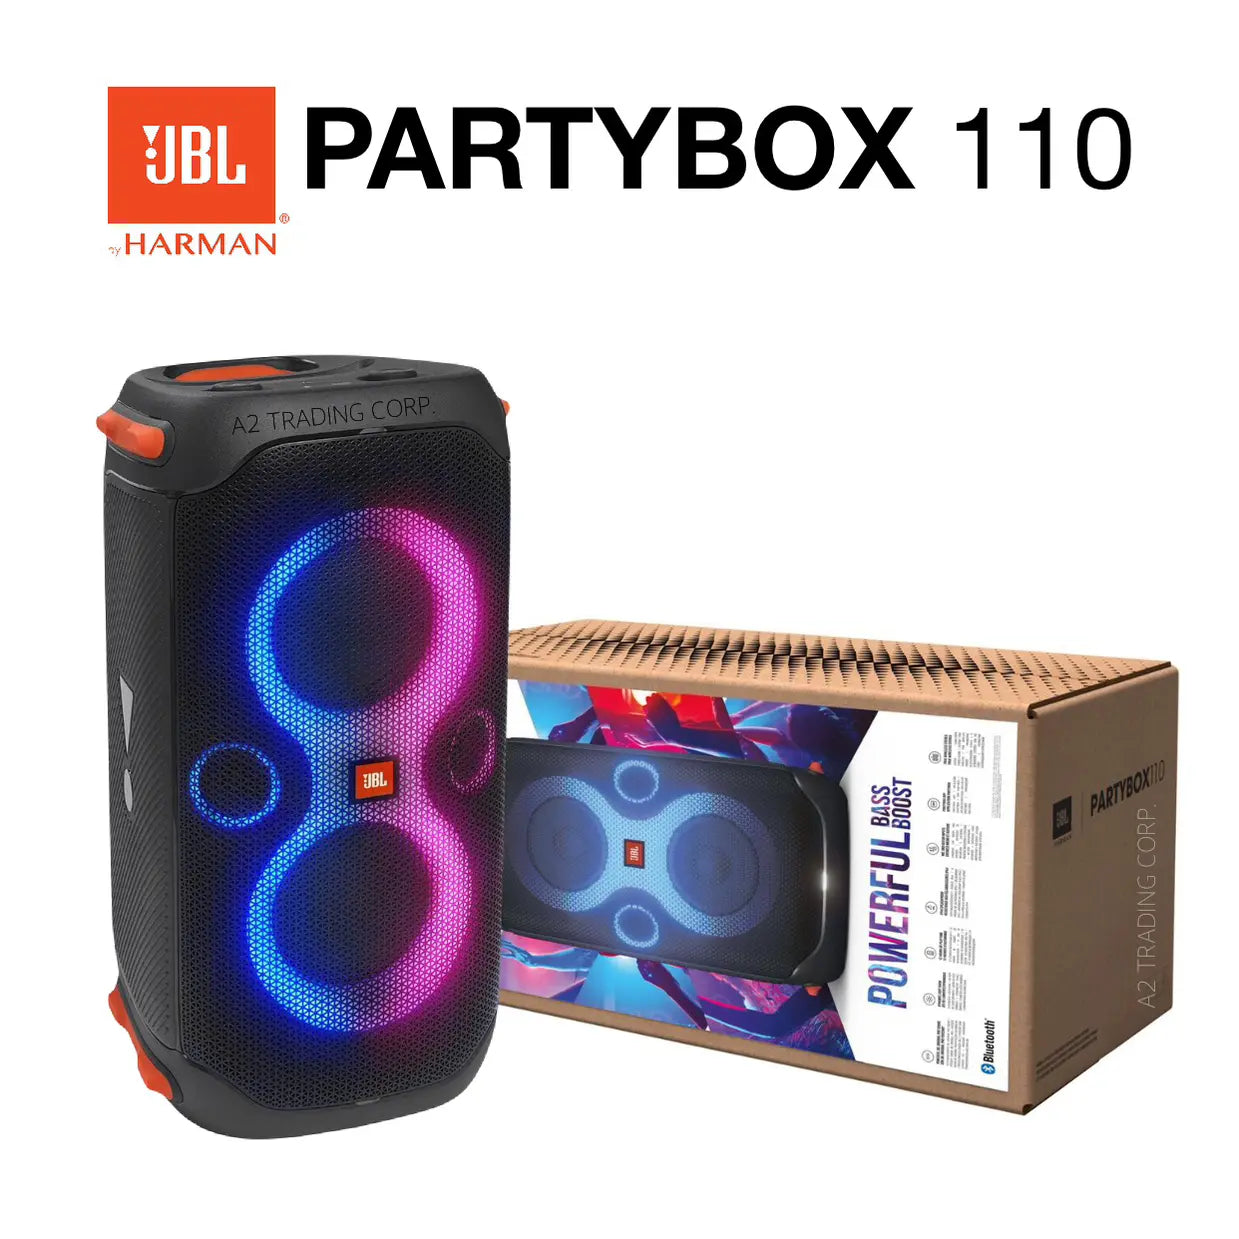  JBL Partybox 110 - Altavoz Bluetooth portátil con